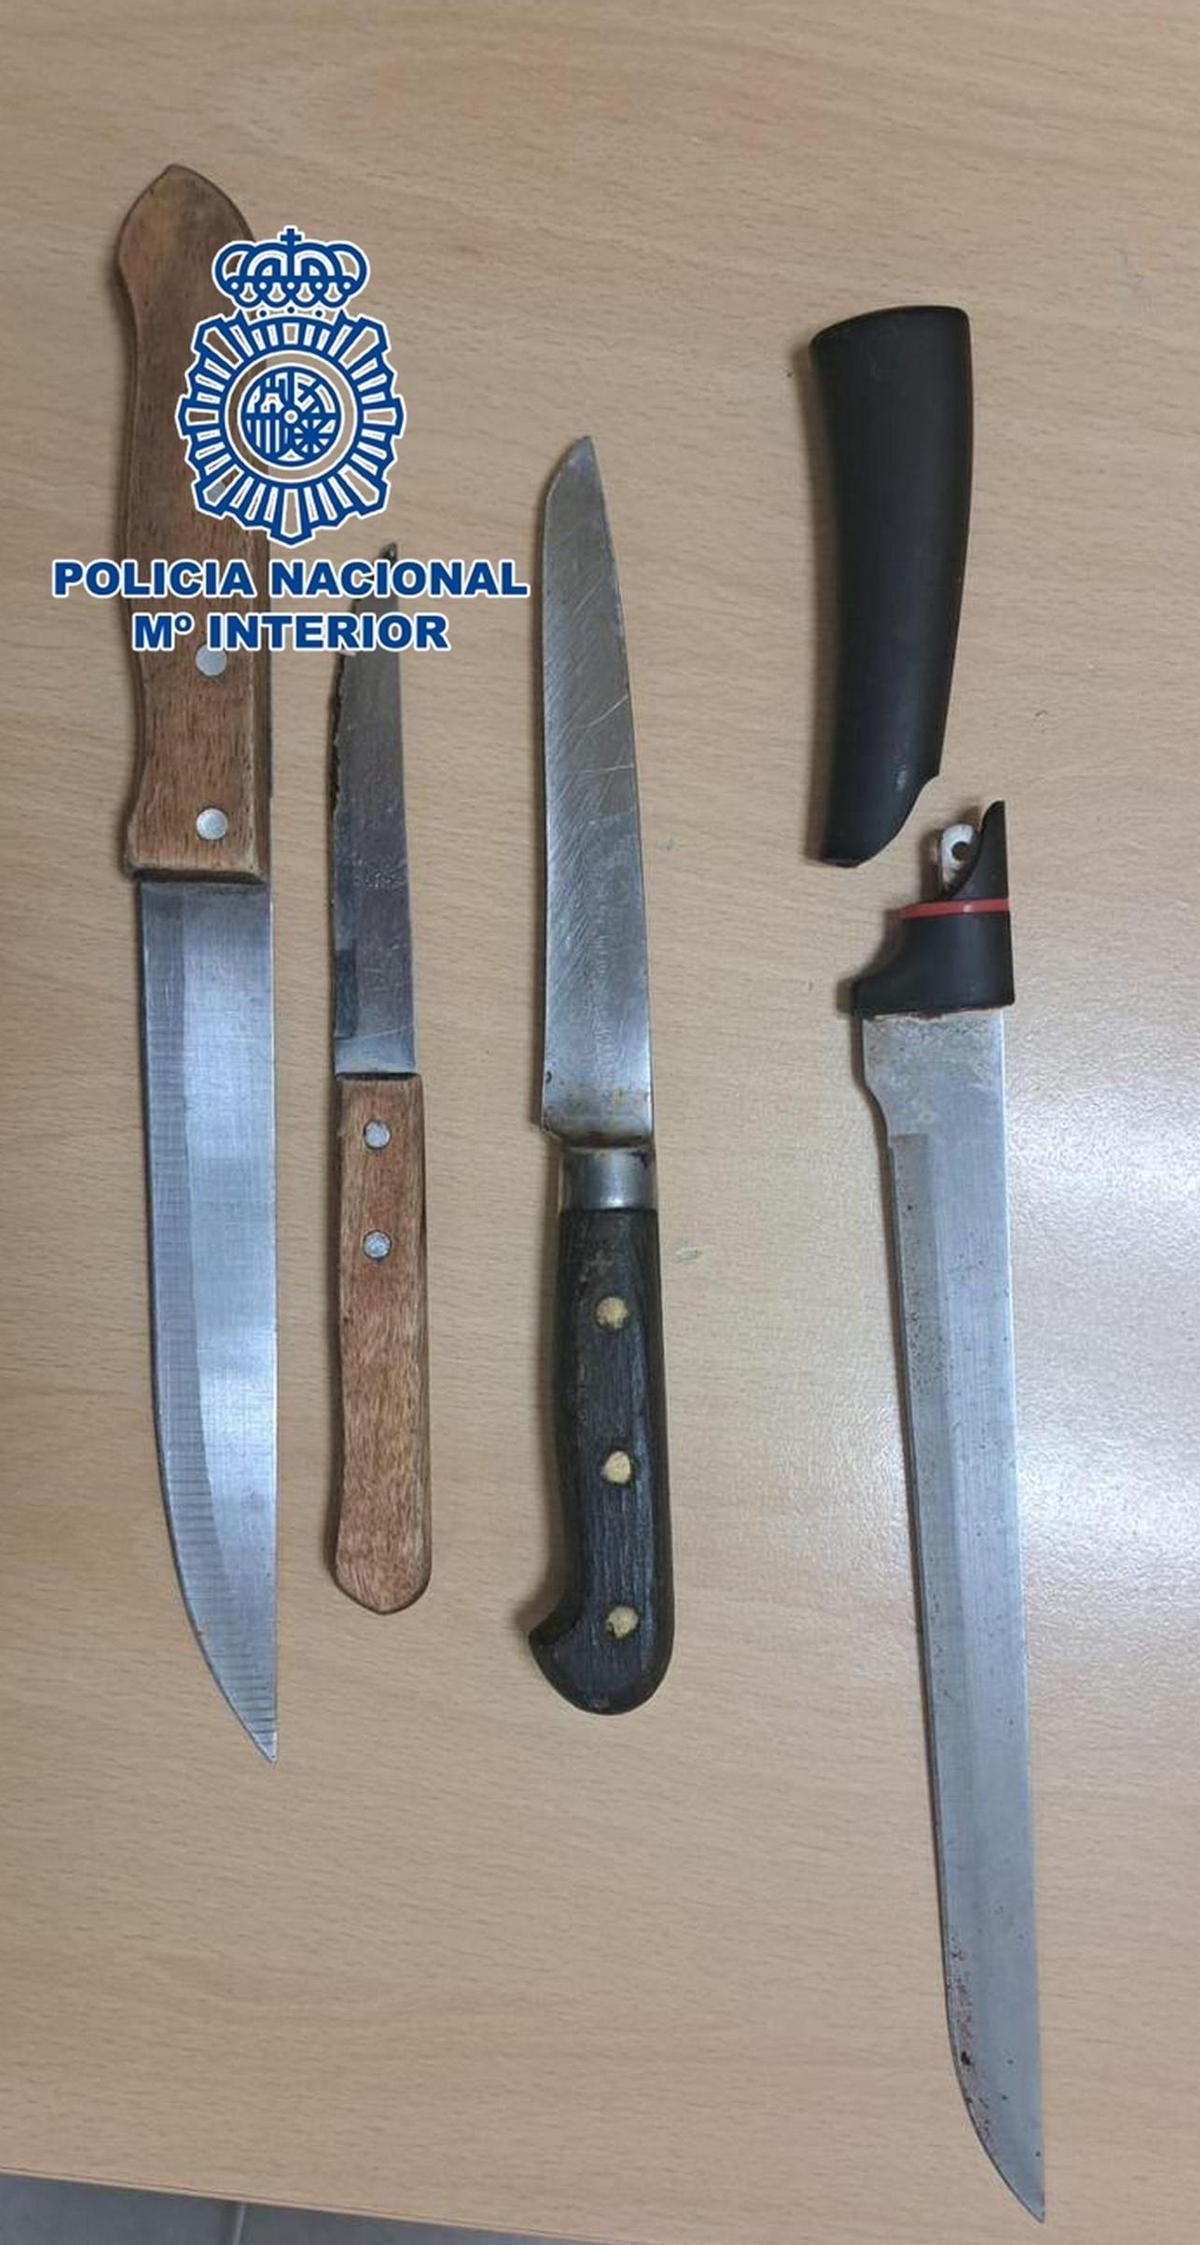 Tres policías heridos por arma blanca tras reducir a un joven atrincherado en su domicilio en Canarias.